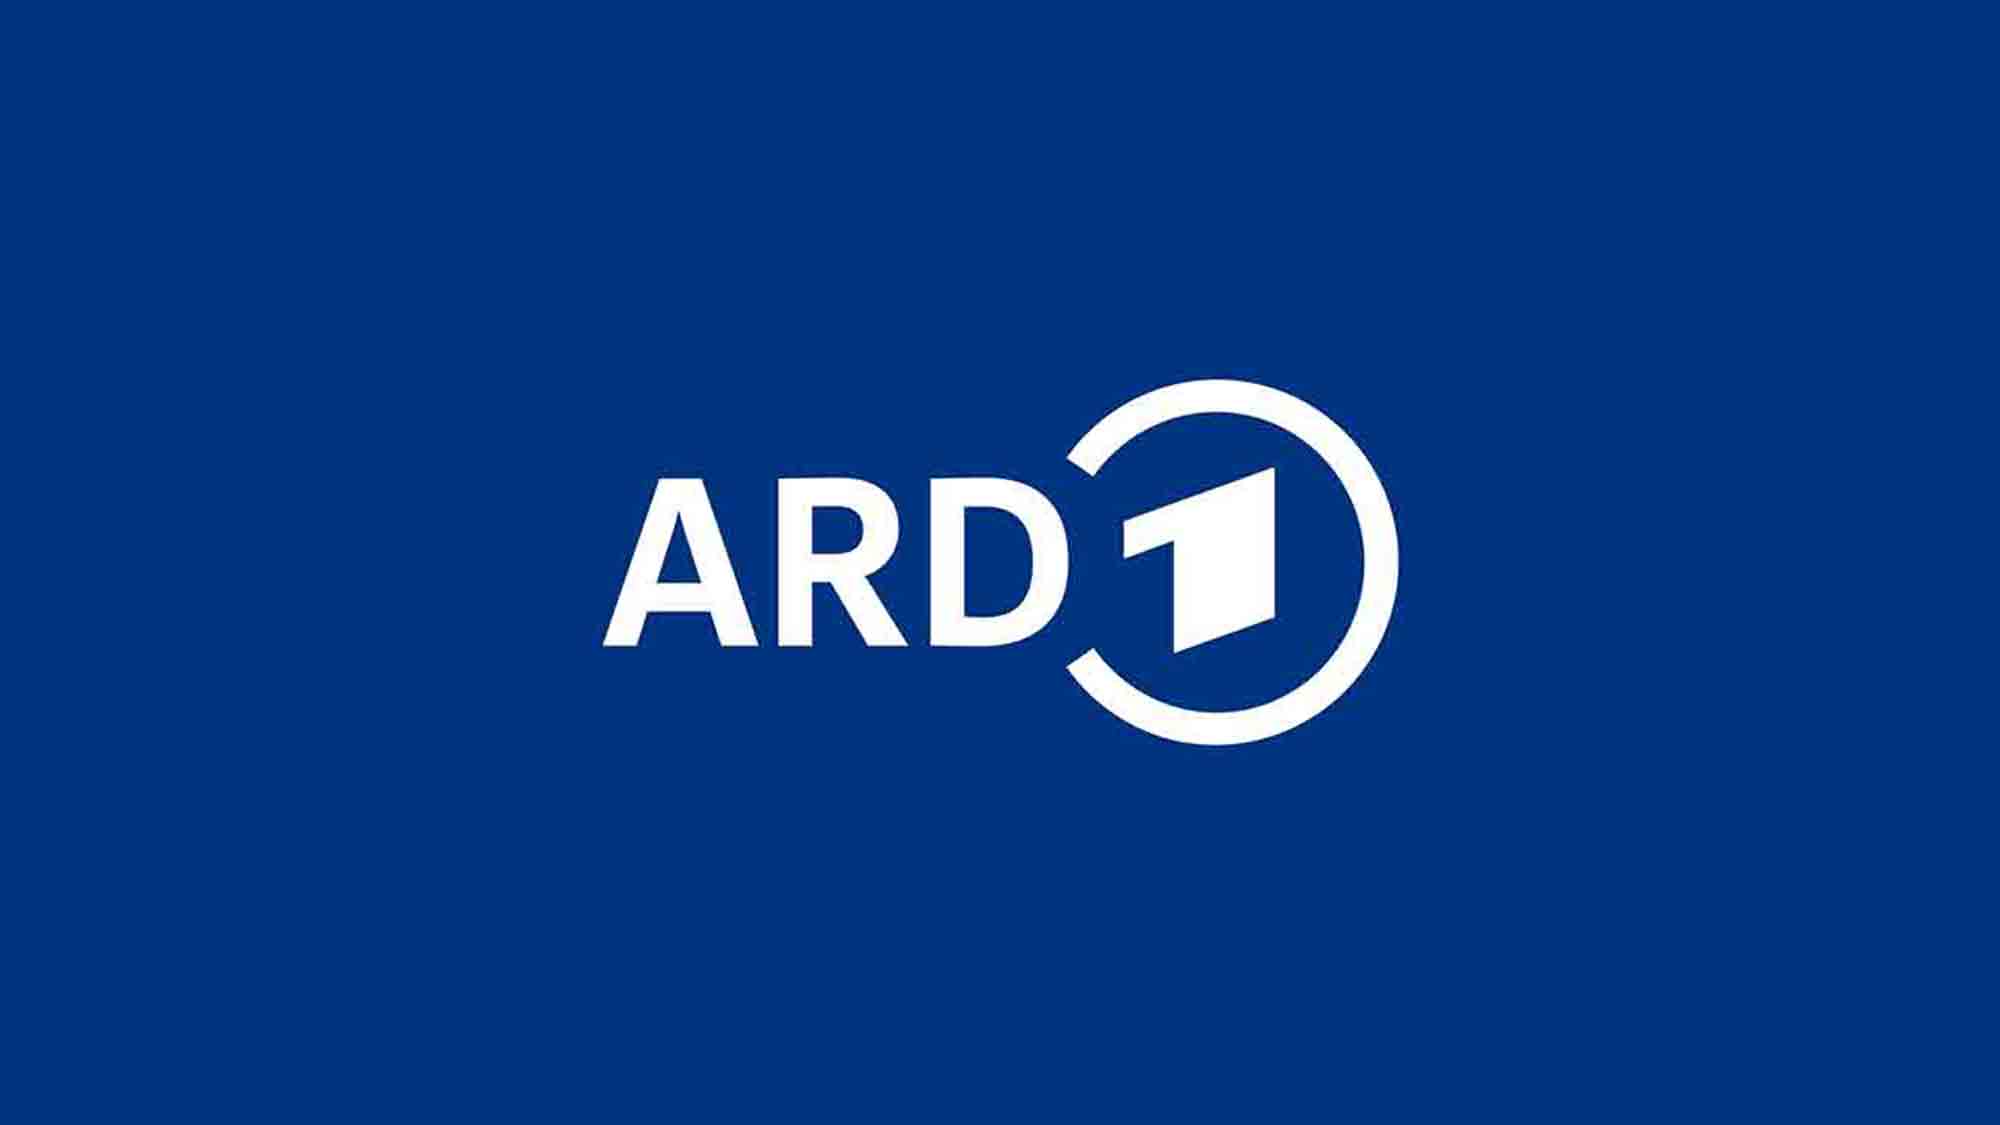 ARD, Das Erste: Klingbeil bei »Maischberger« – Haushaltsstreit ist »größte innenpolitische Krise« der Ampel